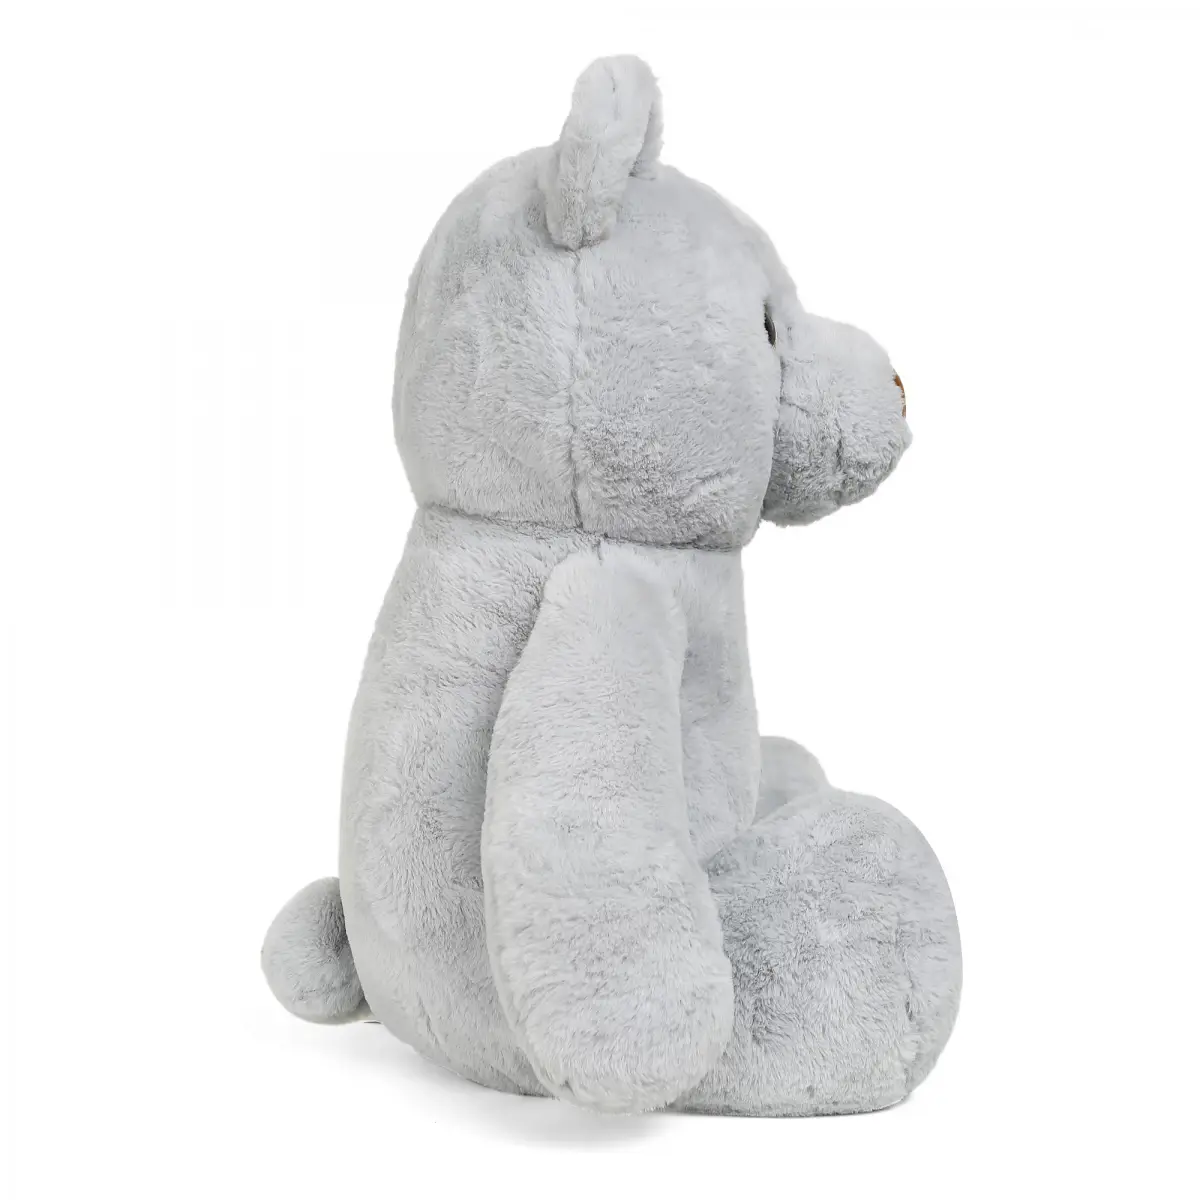 FuzzBuzz Plush Stuffed Bear Toy, Grey, 12M+